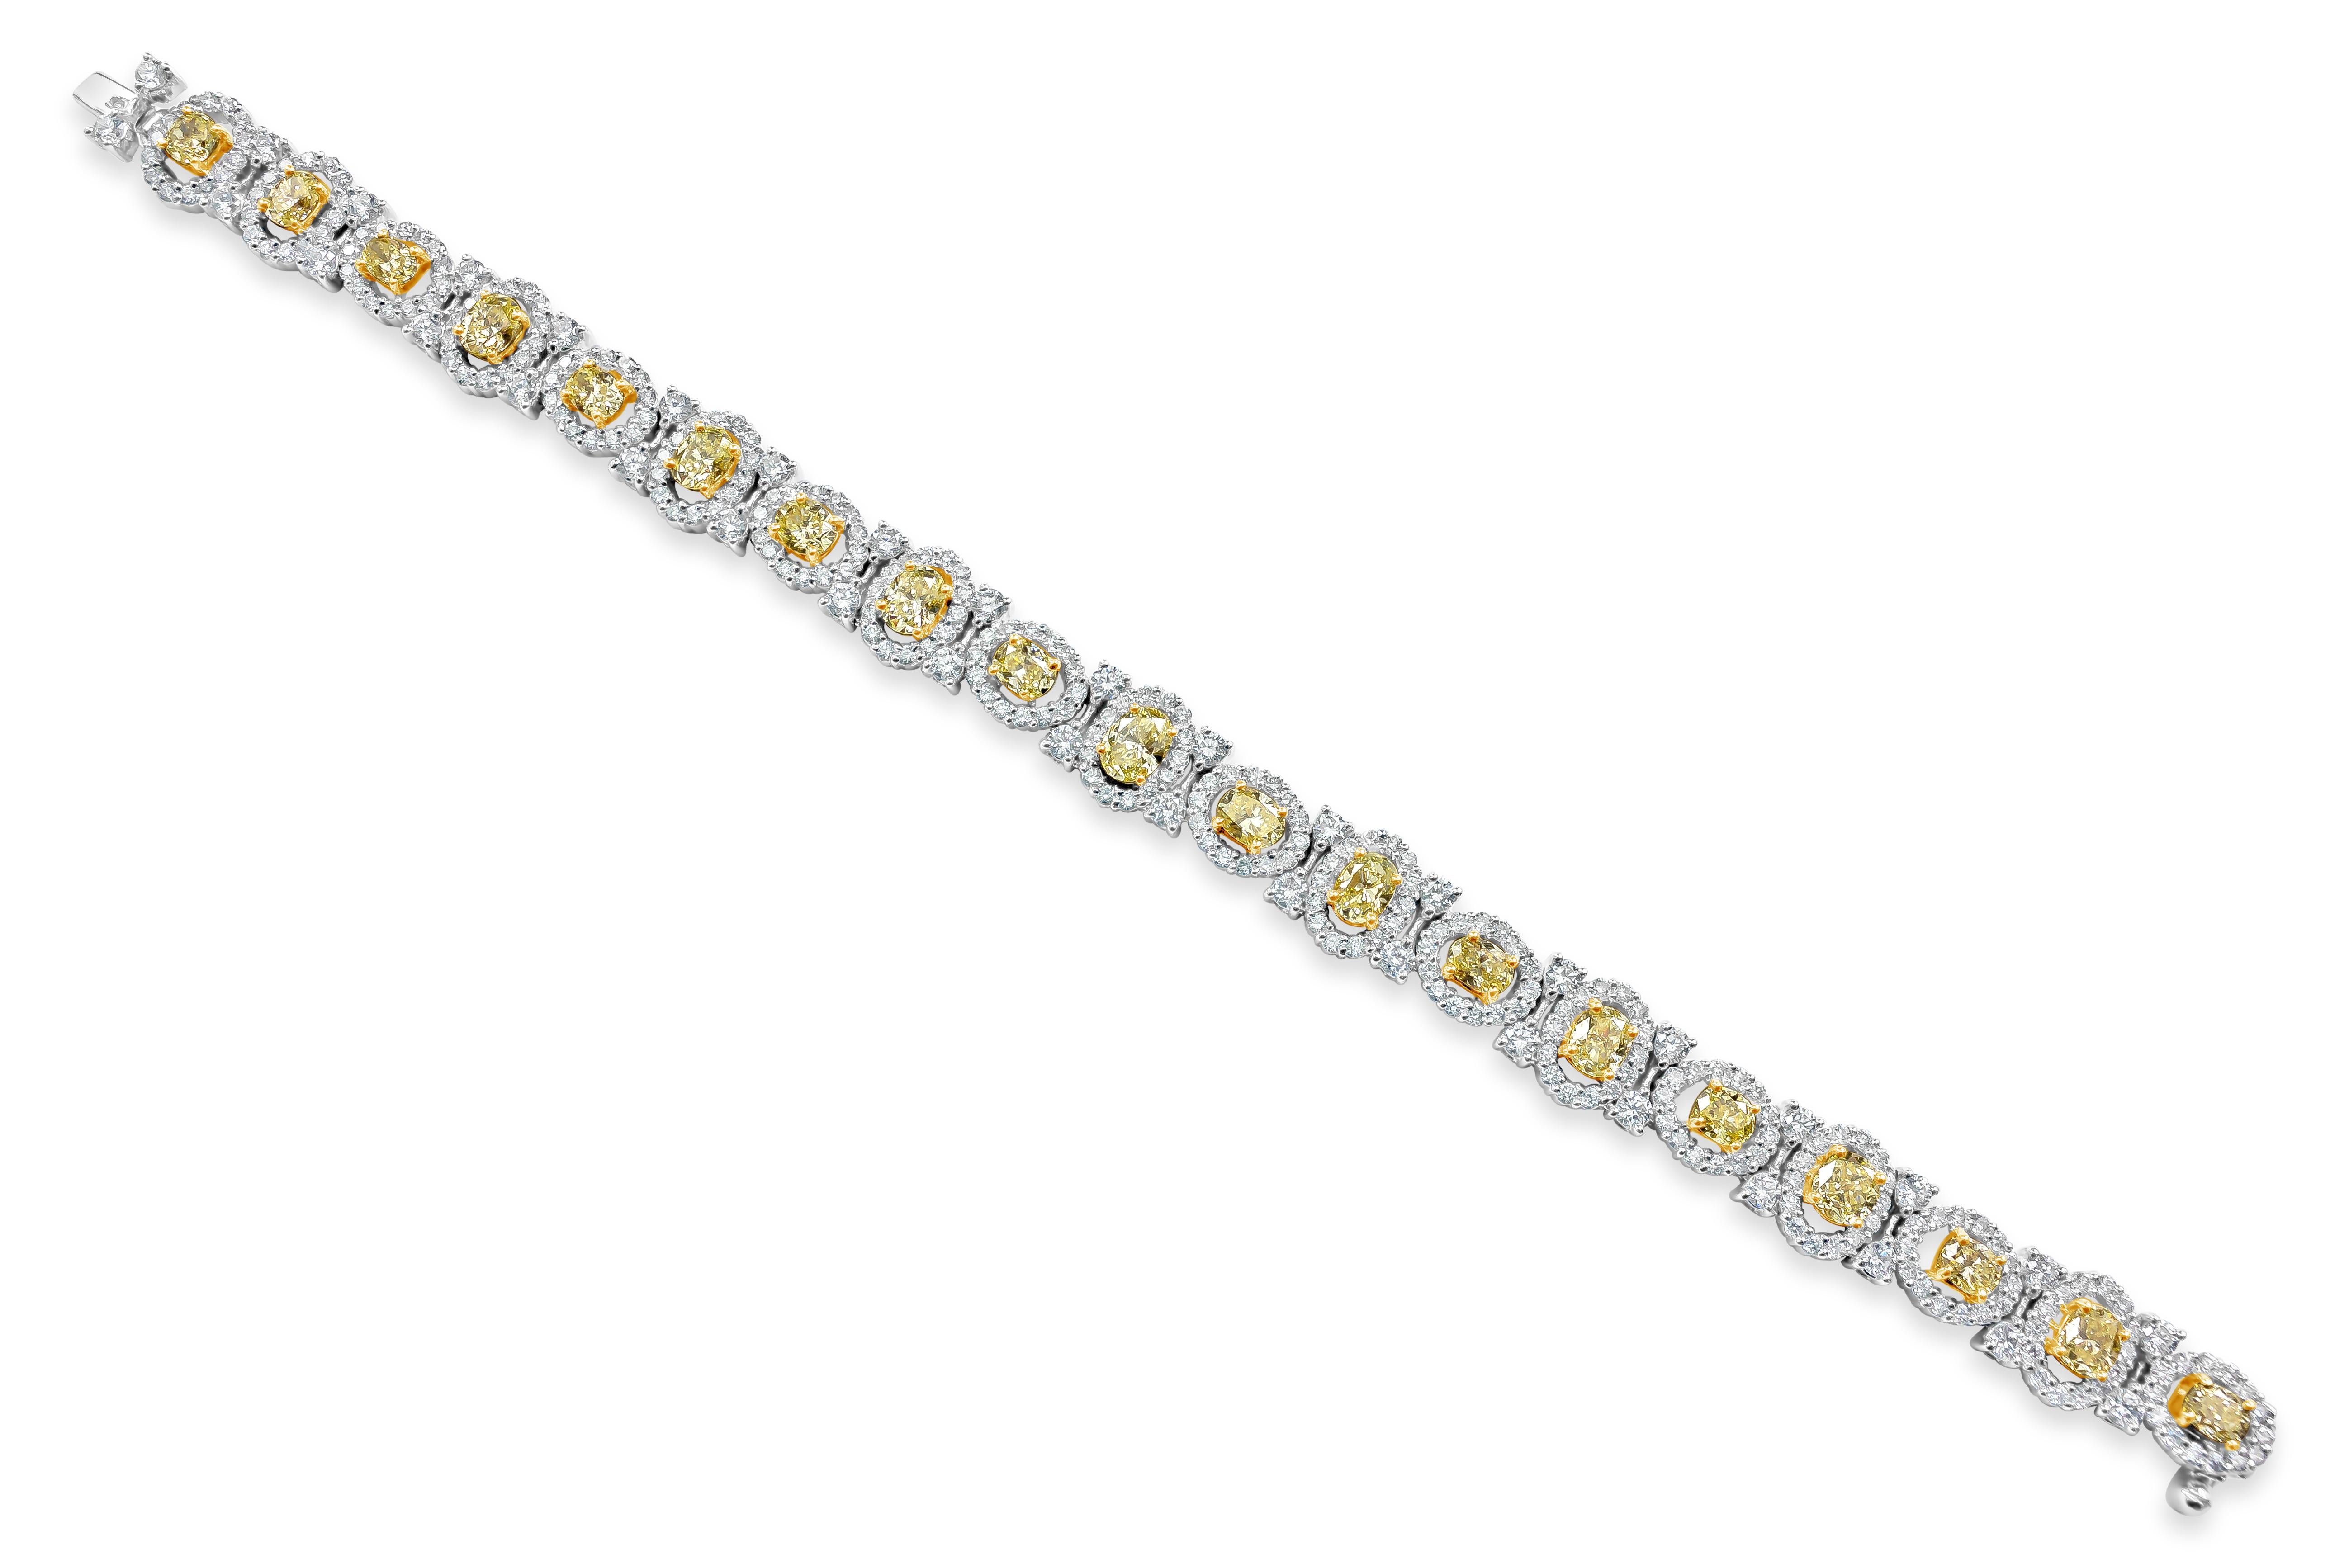 Ein elegantes Schmuckstück mit 19 gelben Diamanten im Ovalschliff, die in einem durchbrochenen Halo gefasst sind, der mit runden Brillanten akzentuiert ist. Die gelben Fancy-Diamanten wiegen insgesamt 6,21 Karat; die Akzentdiamanten wiegen insgesamt